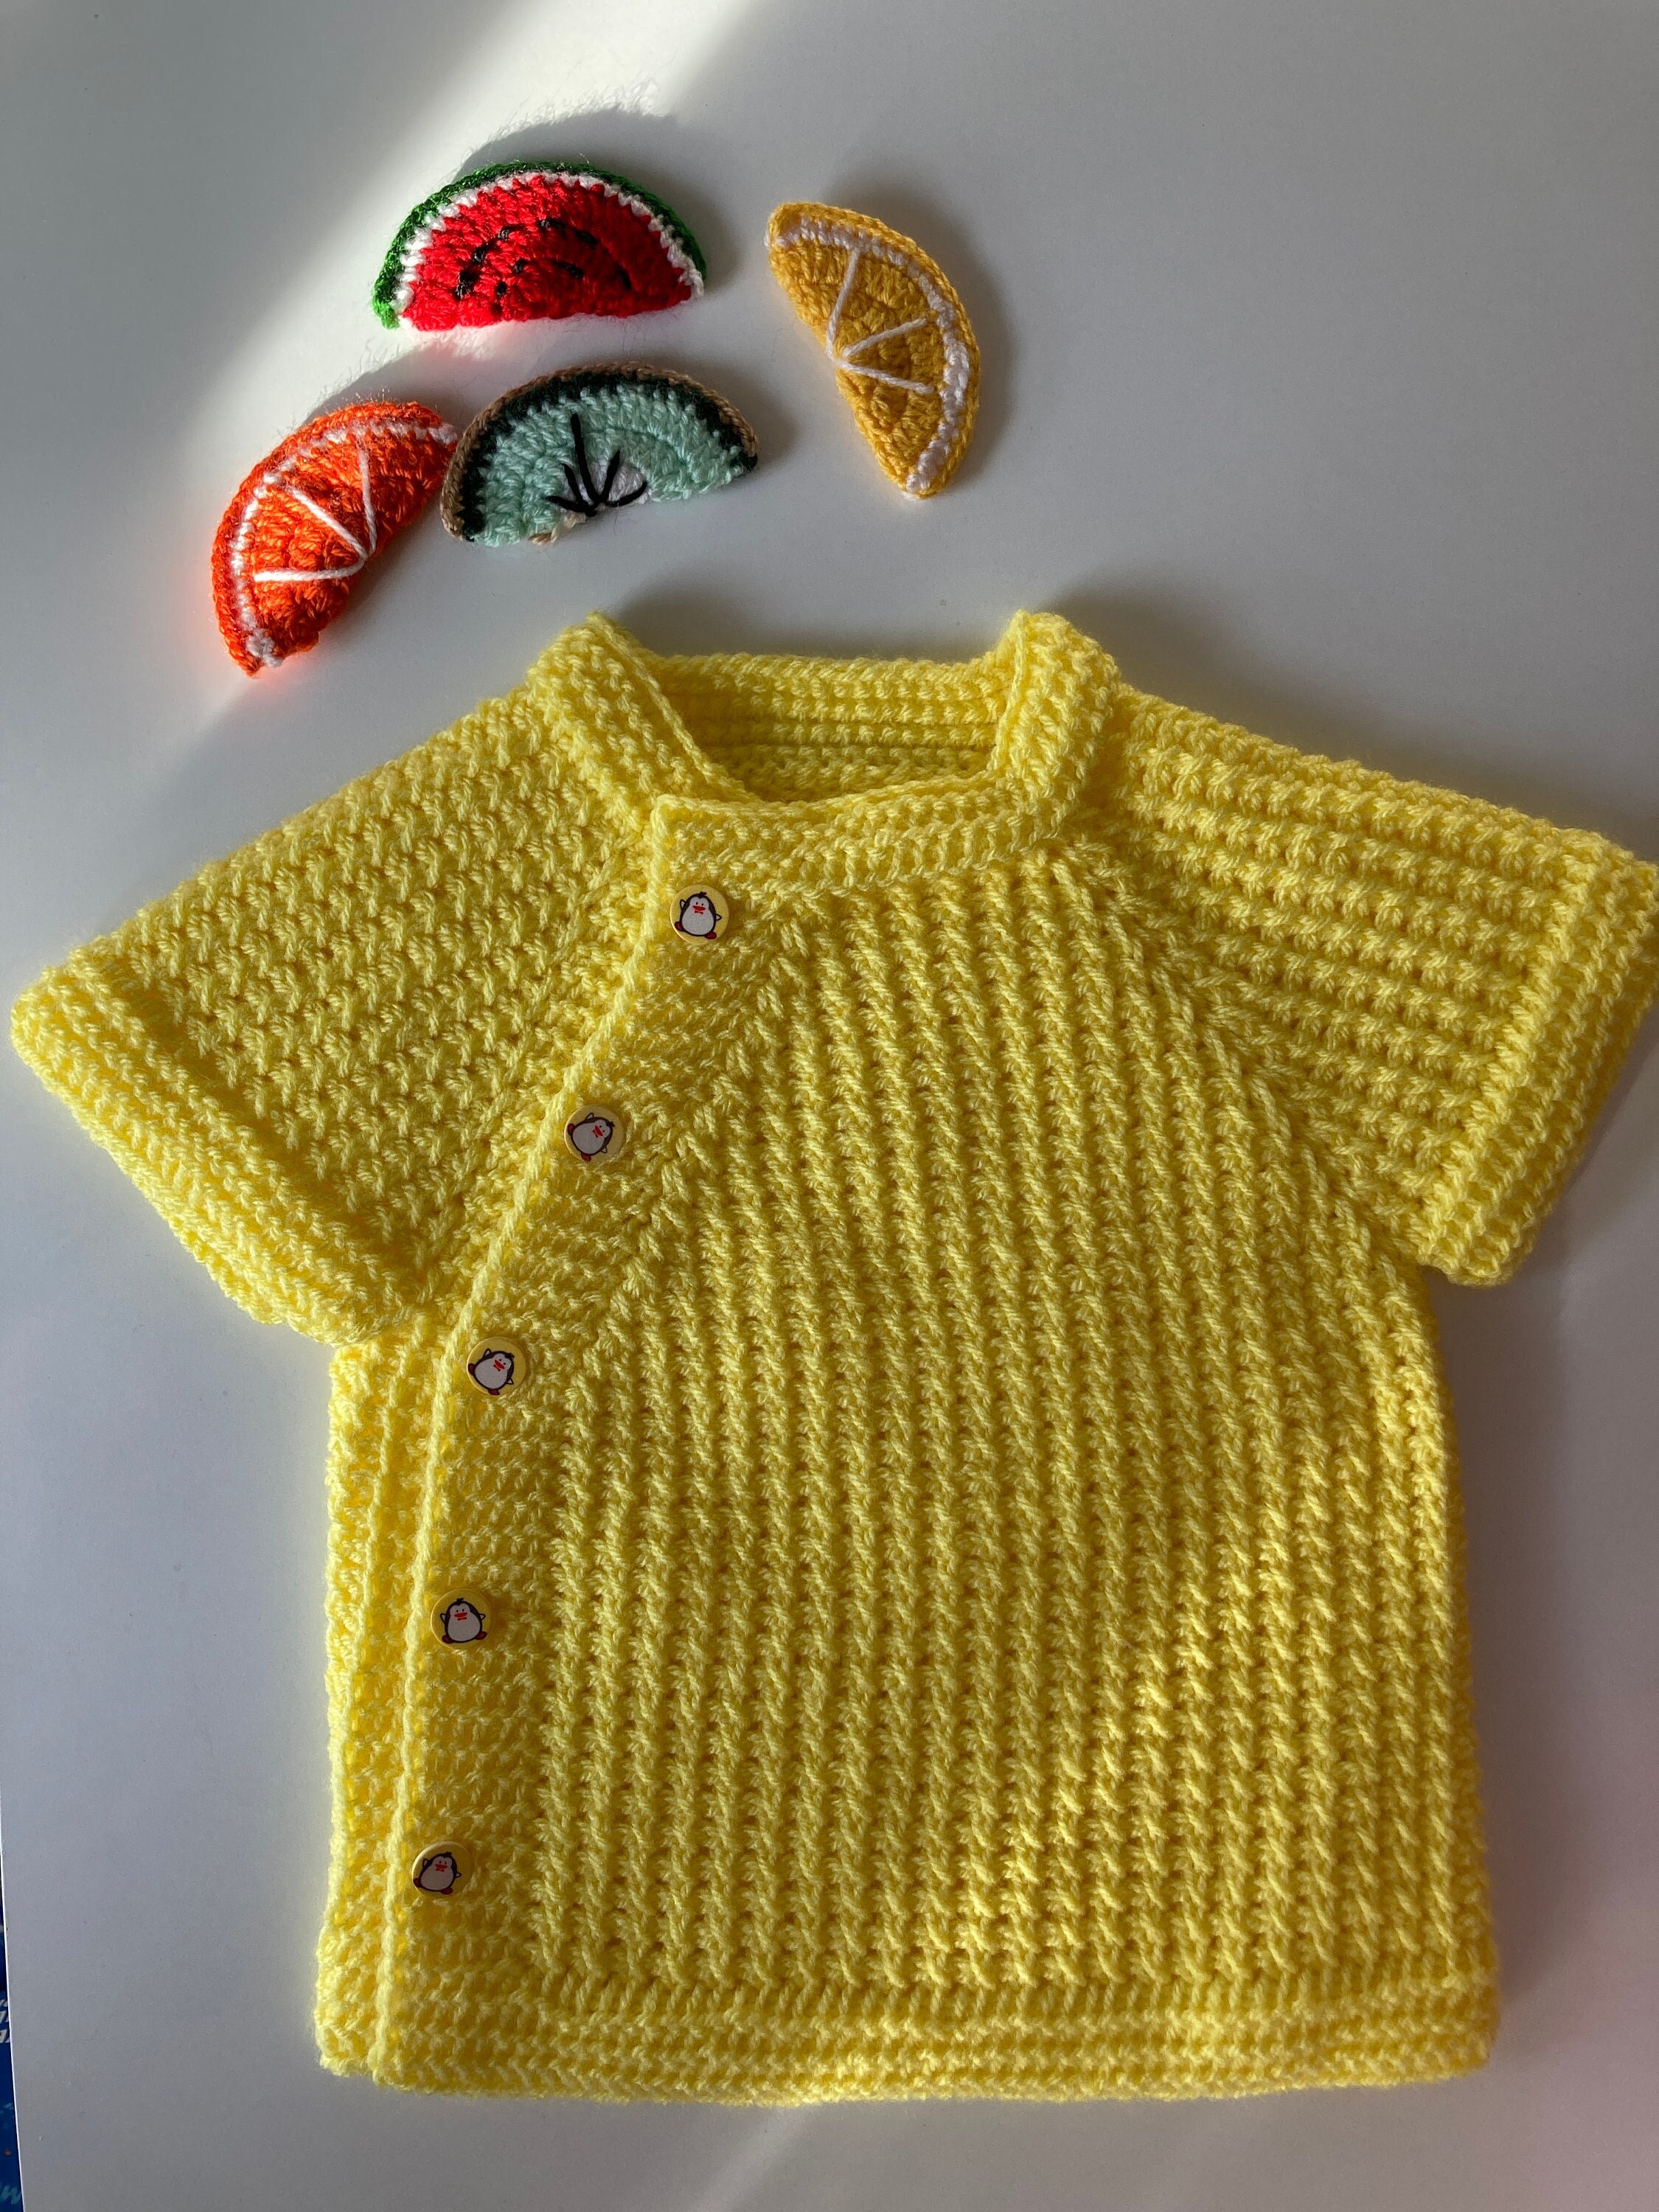 Sonnenschutz Pinguin mit Kind - Gelb Pastell - Geschenk, Danke